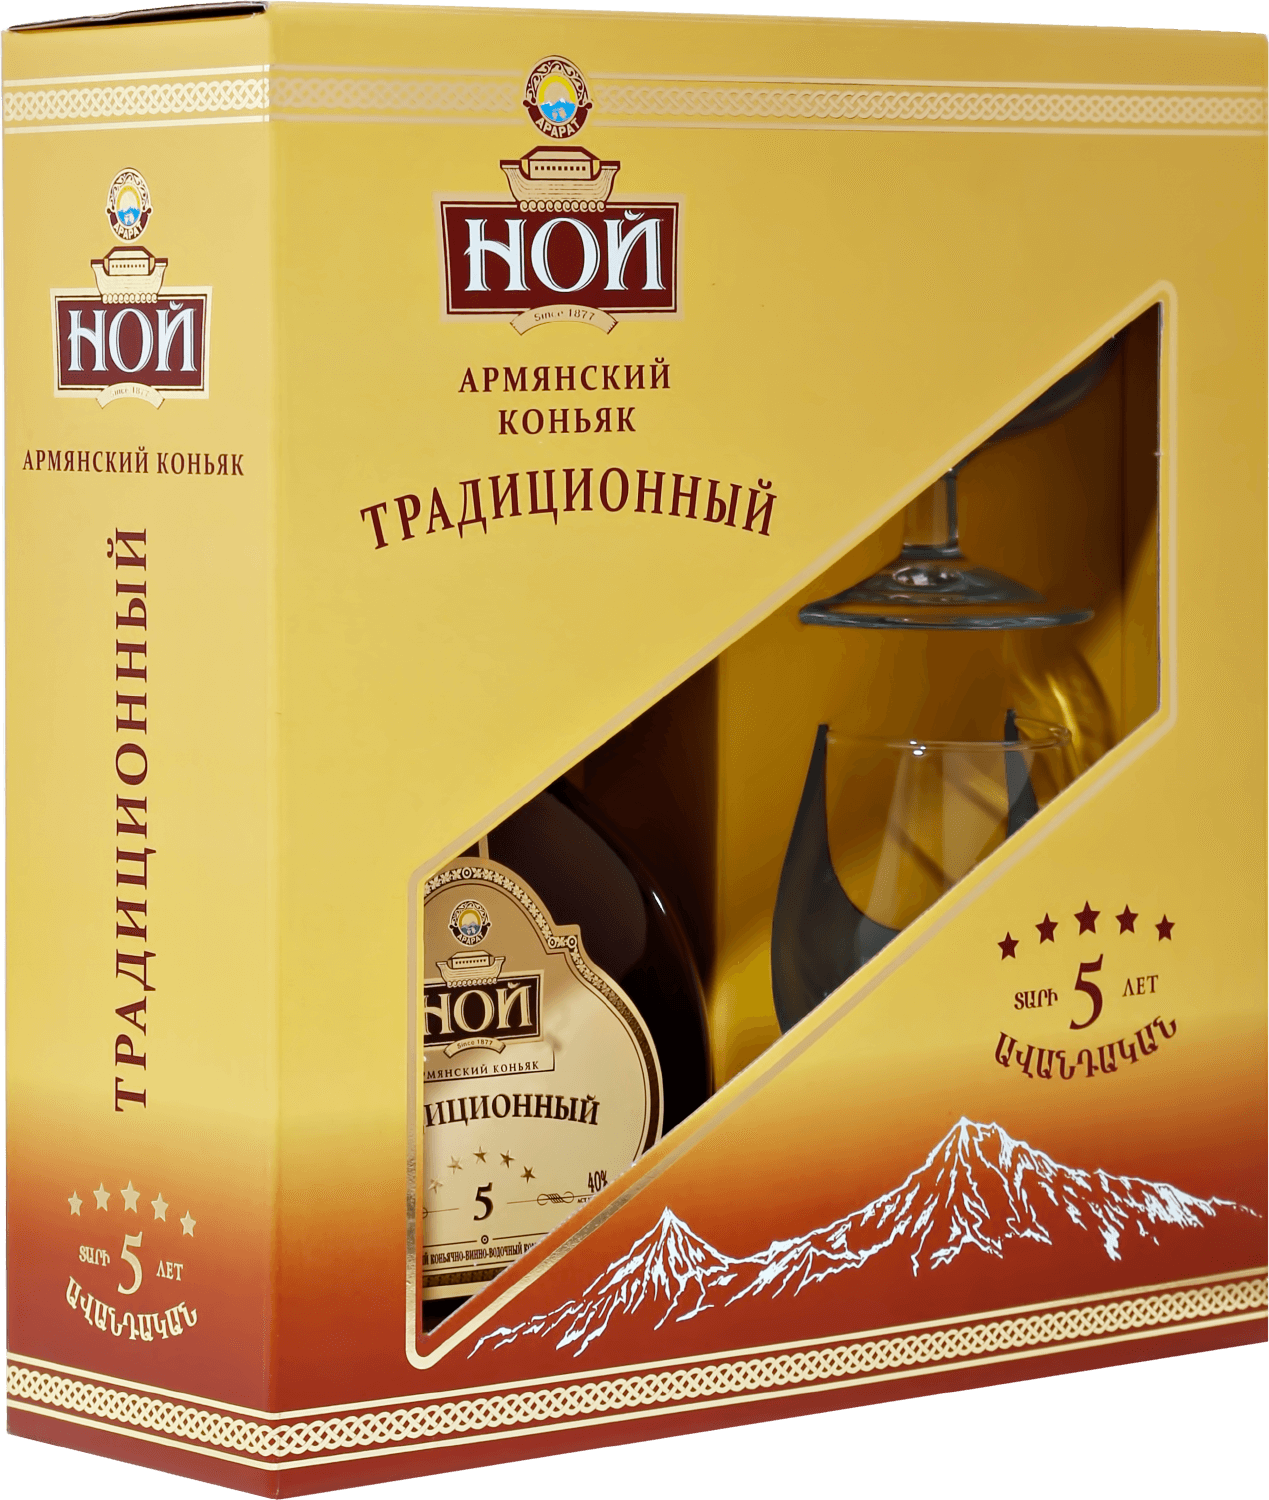 Noy Tradicionniy Armenian Brandy 5 y.o. in gift box with two glasses noy tradicionniy armenian brandy 5 y o in gift box with two glasses